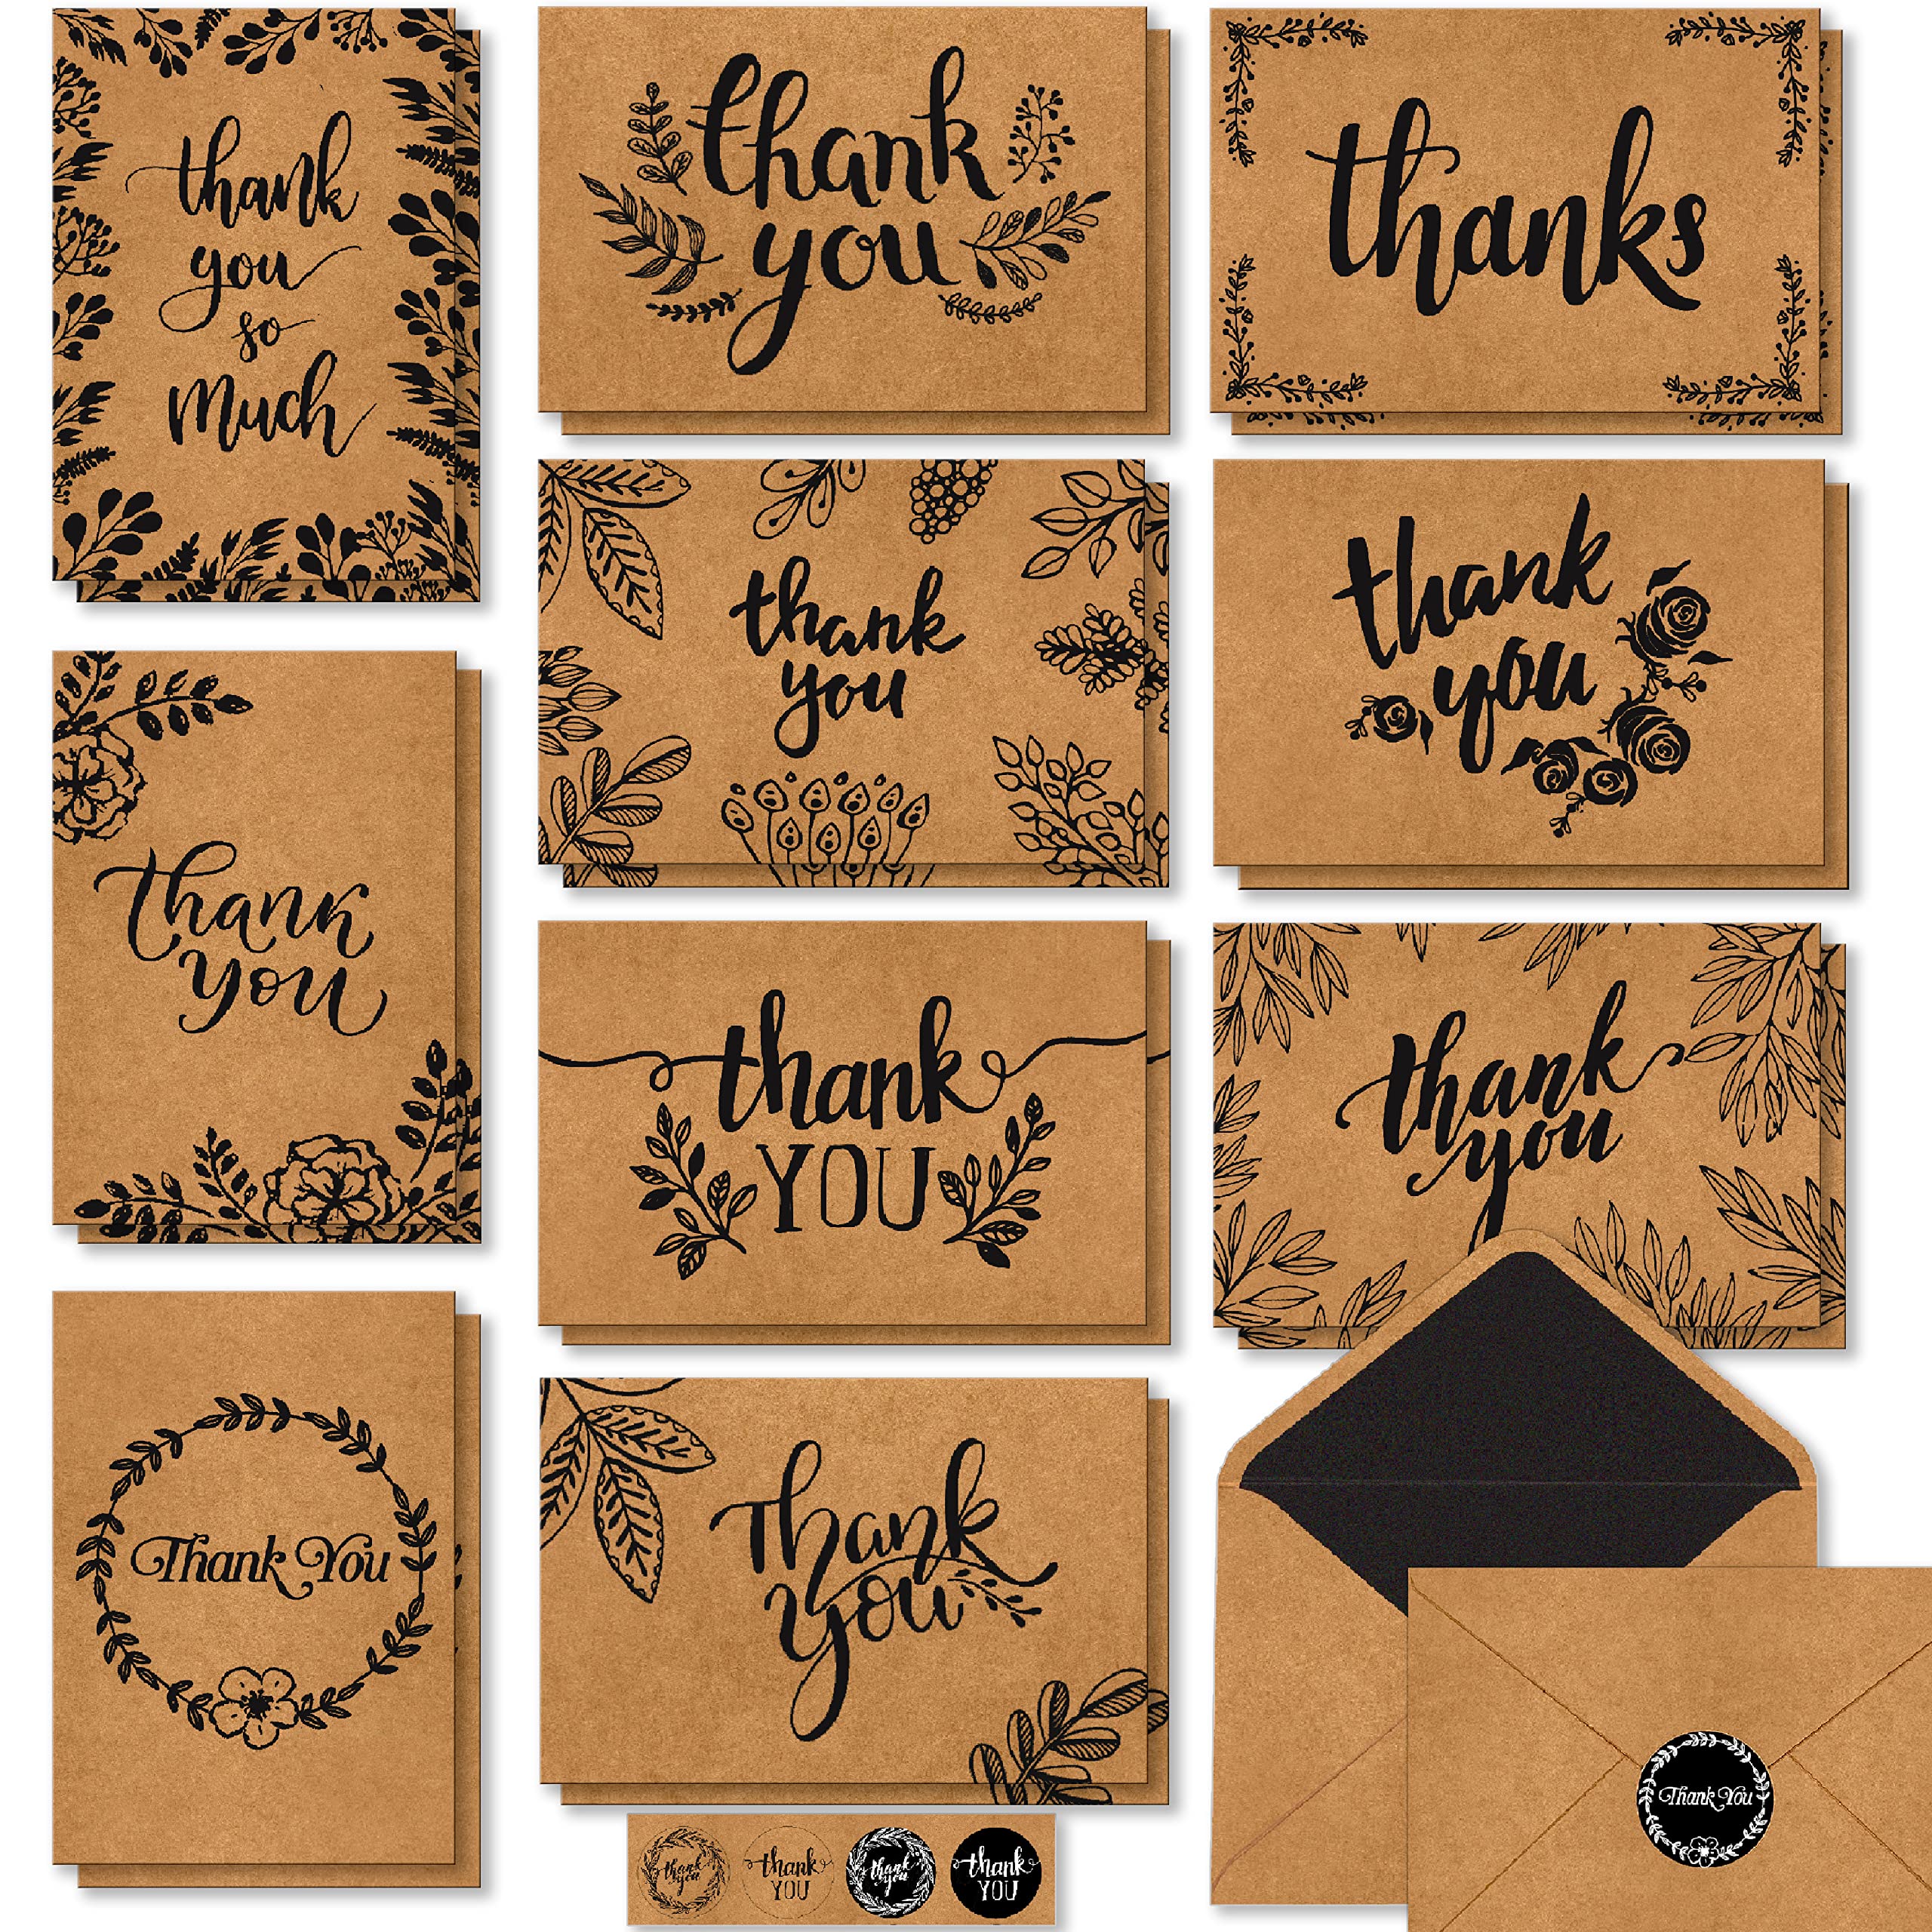 Thank You Cards: Viết thư cảm ơn là một việc làm đầy tình cảm và ý nghĩa. Hãy khám phá những mẫu thiết kế thẻ cảm ơn mới nhất và tìm ra chiếc thẻ hoàn hảo để trao gửi đi những lời cảm ơn của bạn. Với một chiếc thẻ đẹp và ý nghĩa, bạn sẽ làm cho người nhận cảm thấy rất quan tâm và đáng quý.